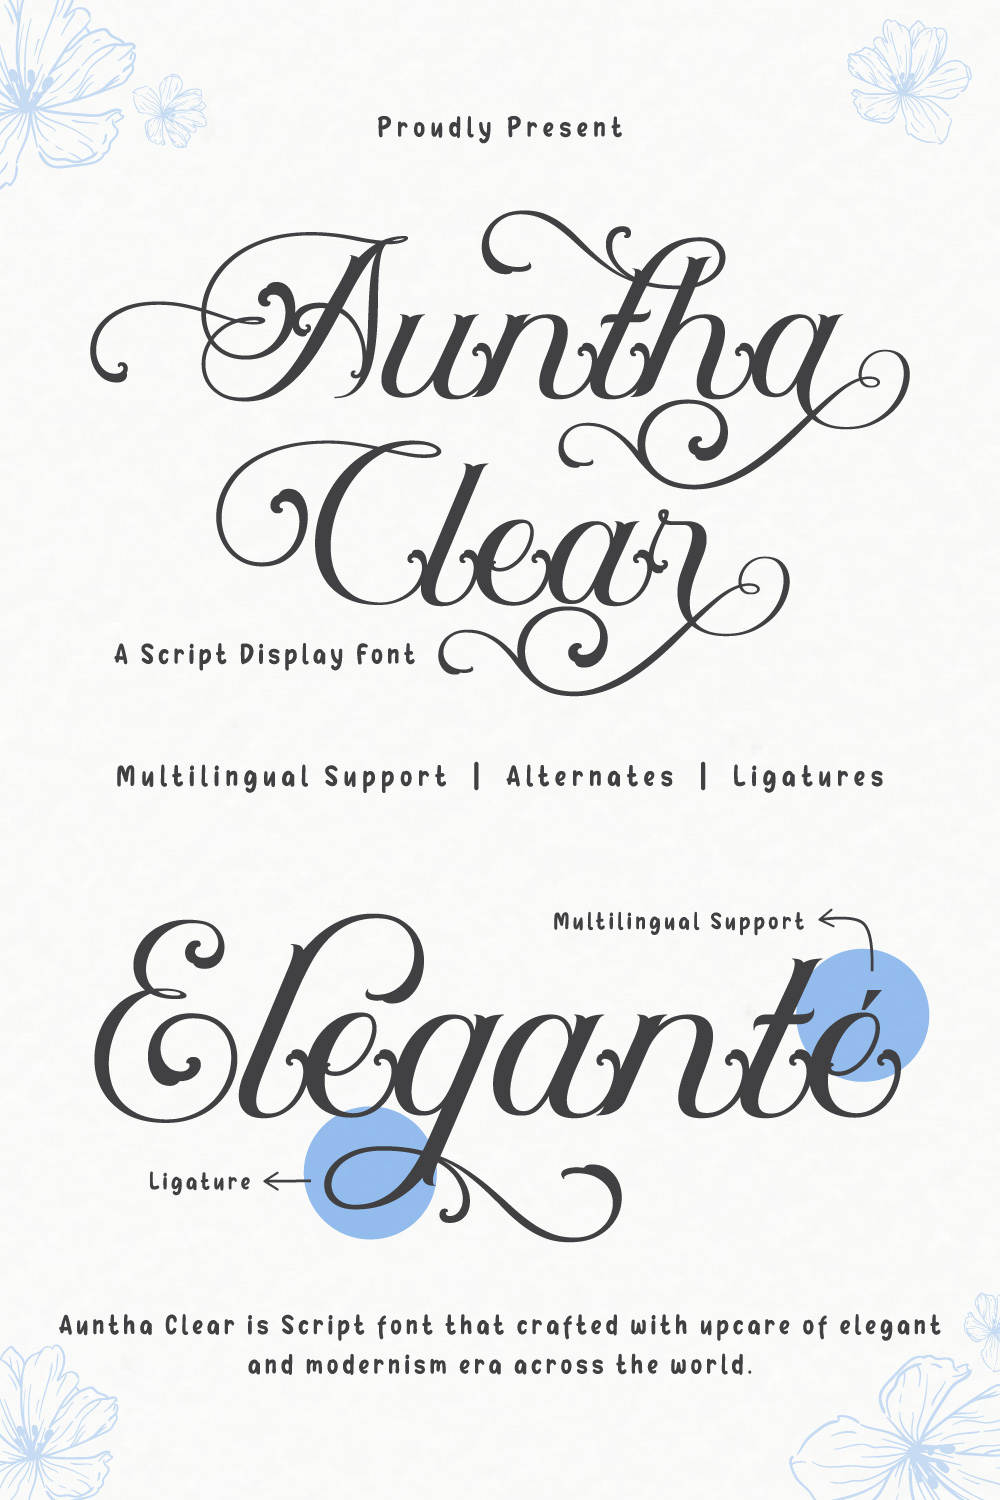 Auntha Clear | Script Font pinterest preview image.